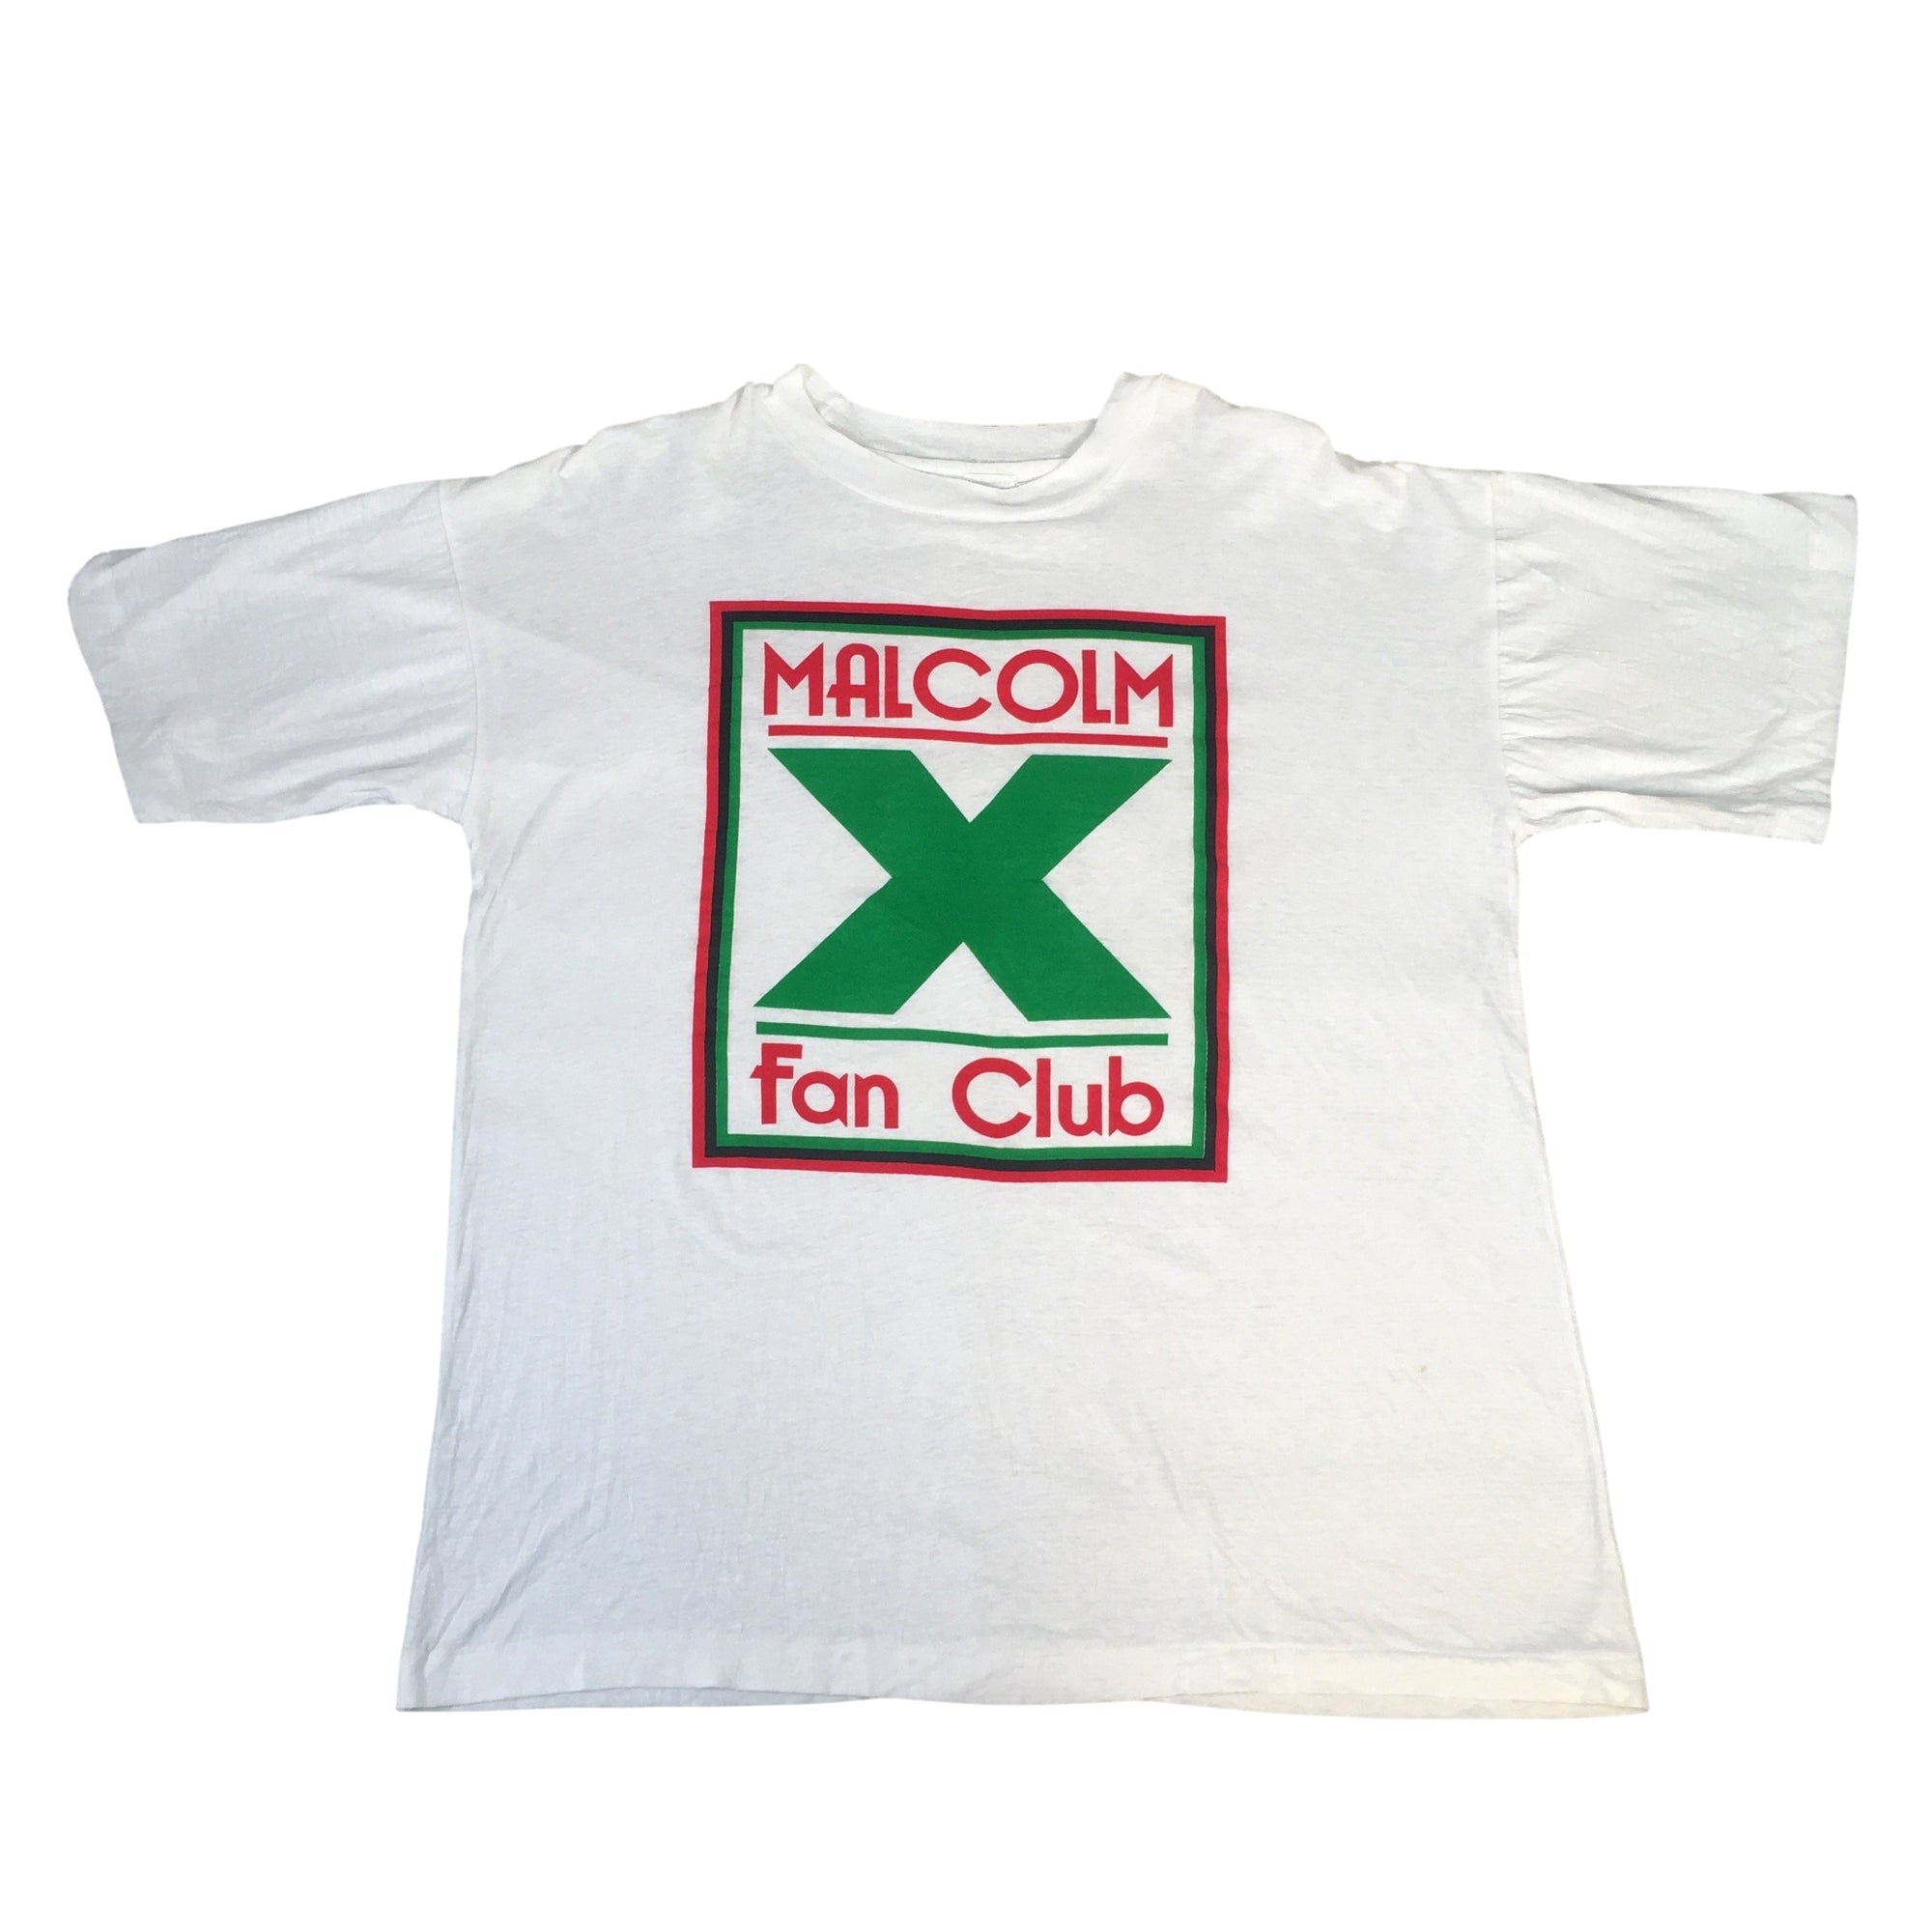 Vintage Malcolm X "Fan Club" T-Shirt - jointcustodydc